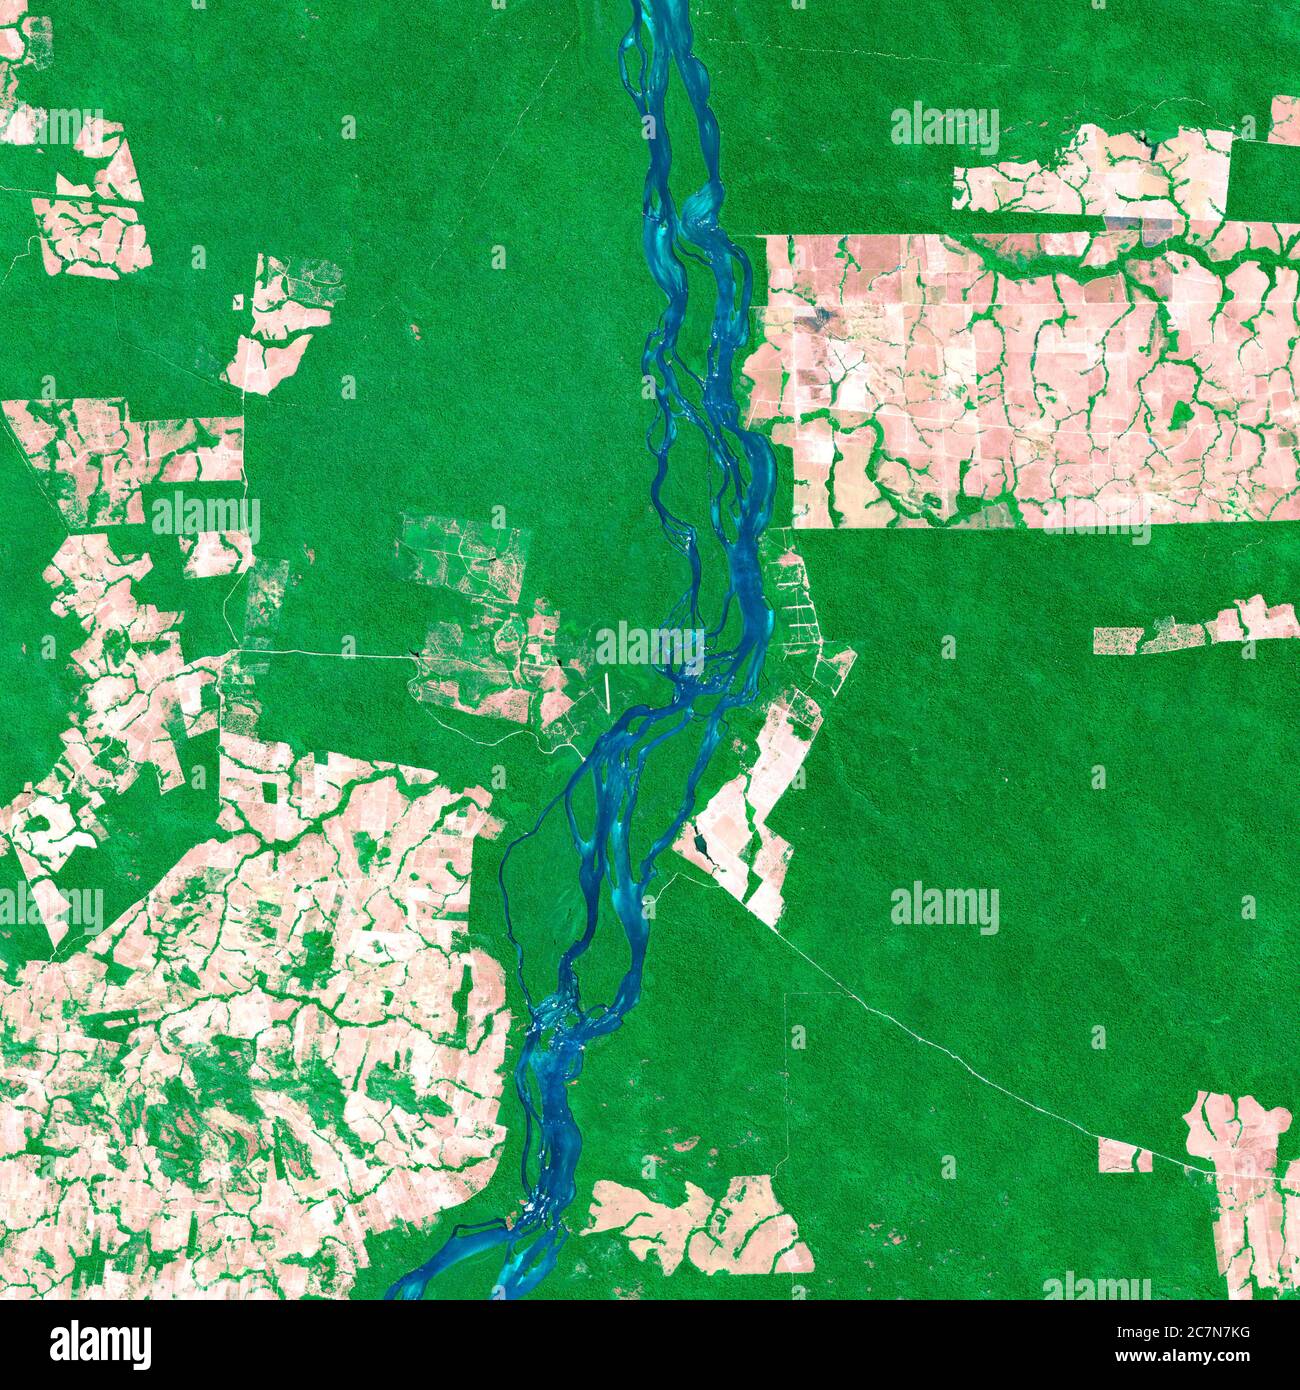 Satellitenbilder des Lakandon-Dschungels Brasiliens im Jahr 2020 werden Feldfrüchte, Flüsse und Dschungel beobachtet. Generierte und modifizierte Bilder des Sentinel-Sensors. Stockfoto